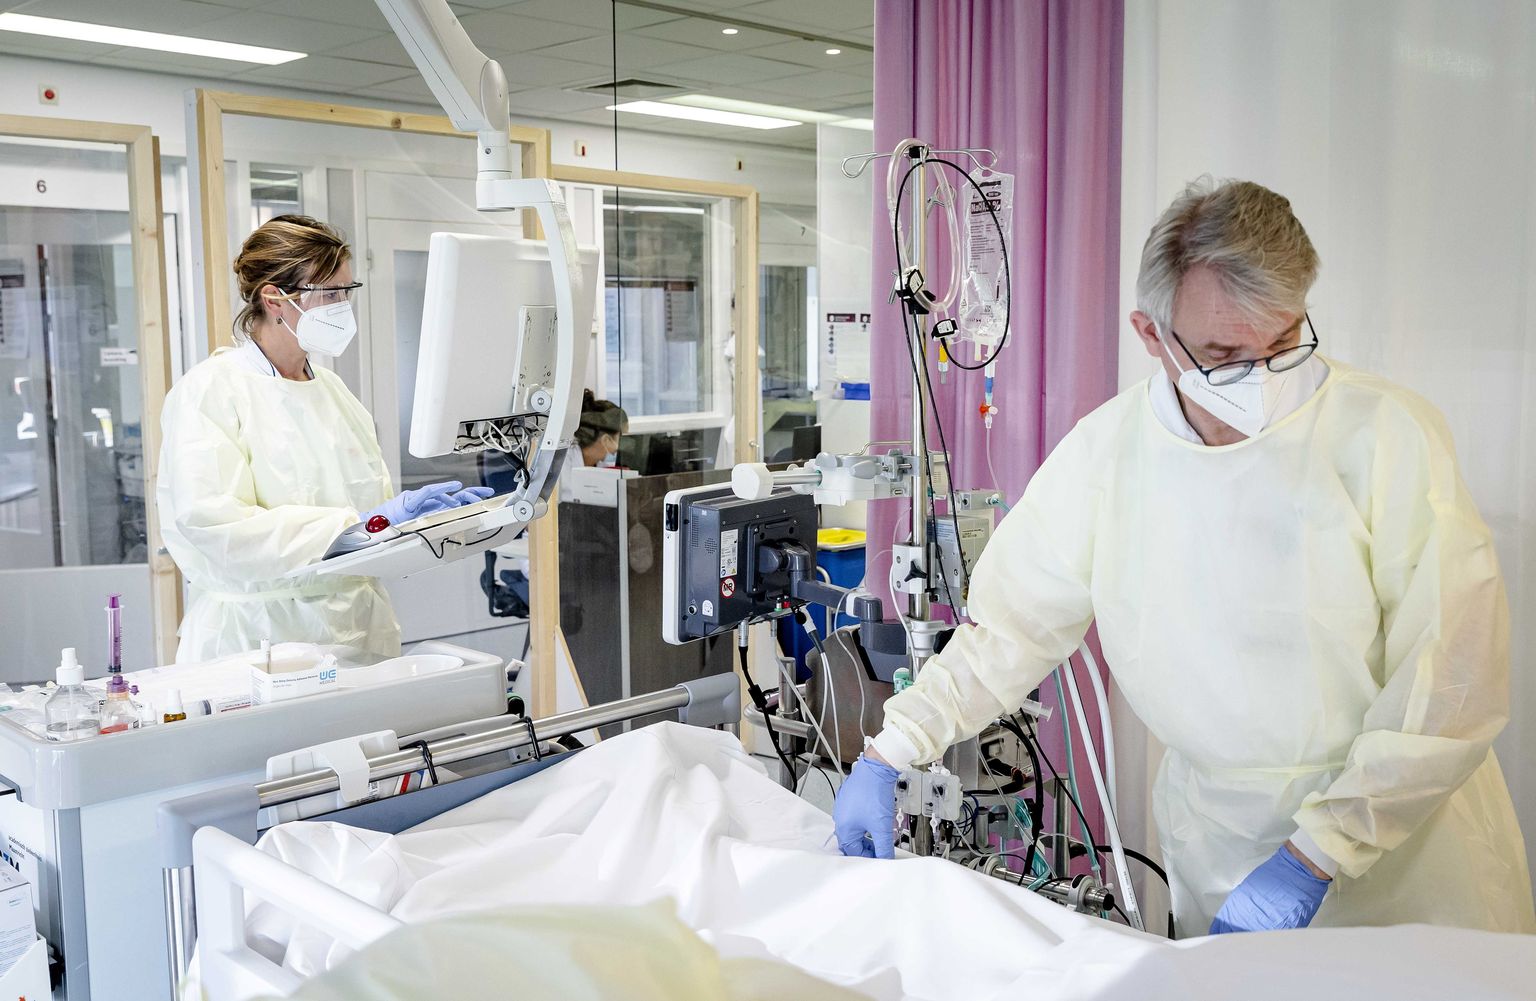 Medmāsas aprūpē Covid-19 pacientu, UMC klīnikas intensīvās terapijas nodaļā Māstrihtā, Nīderlandē, 2021. gada 11. novembrī.